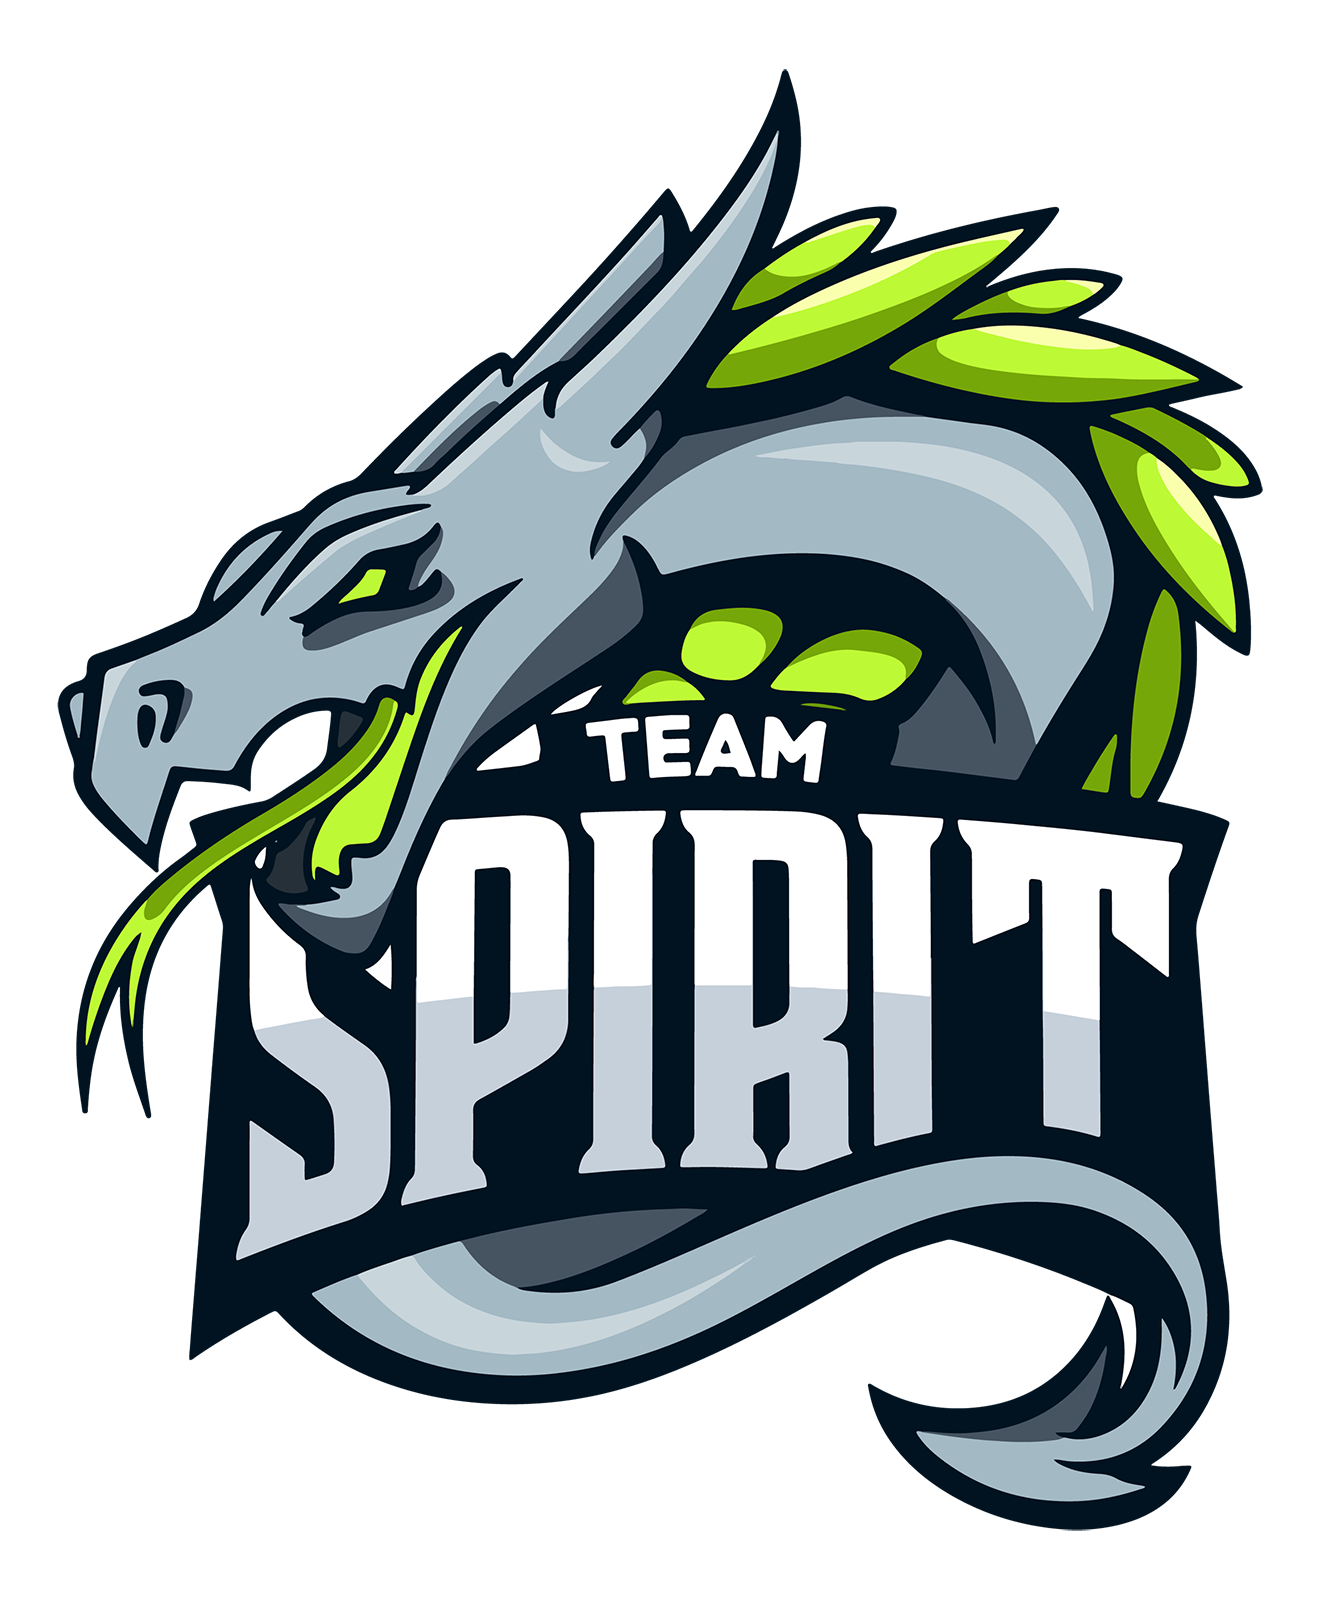 Team spirit aurora